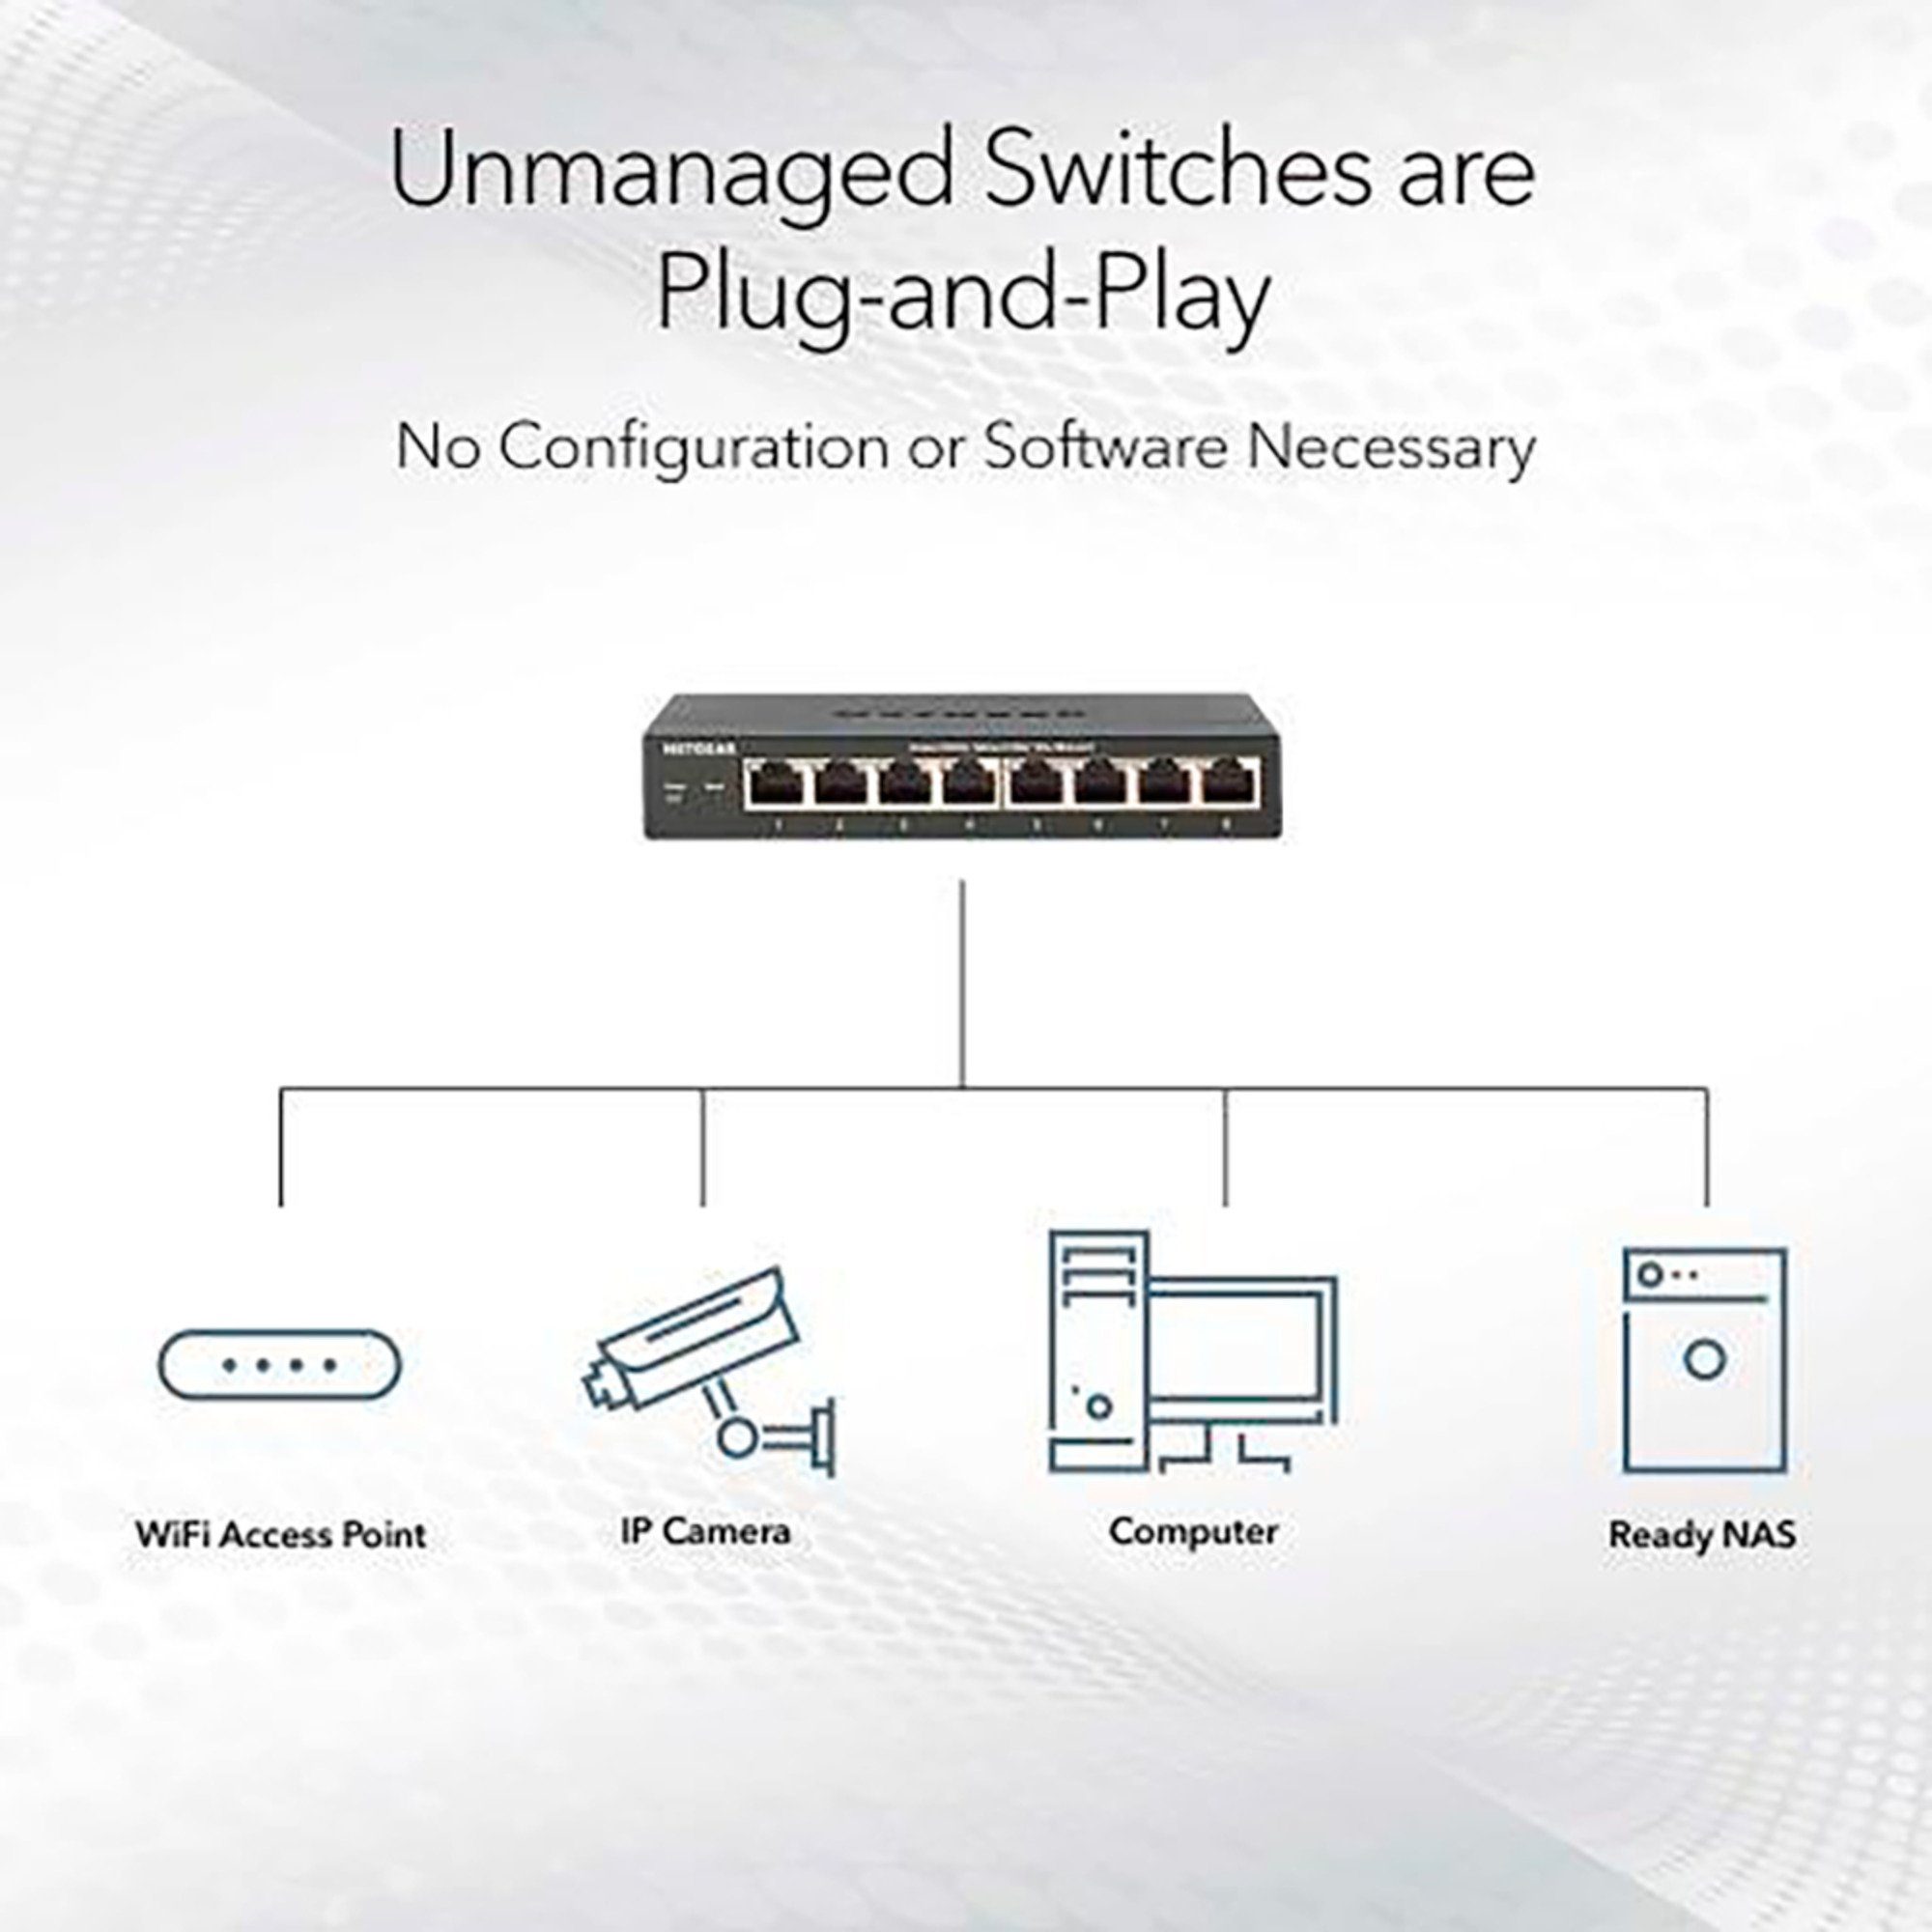 NETGEAR Netgear Netzwerk-Switch (lüfterlos) MS305, Switch